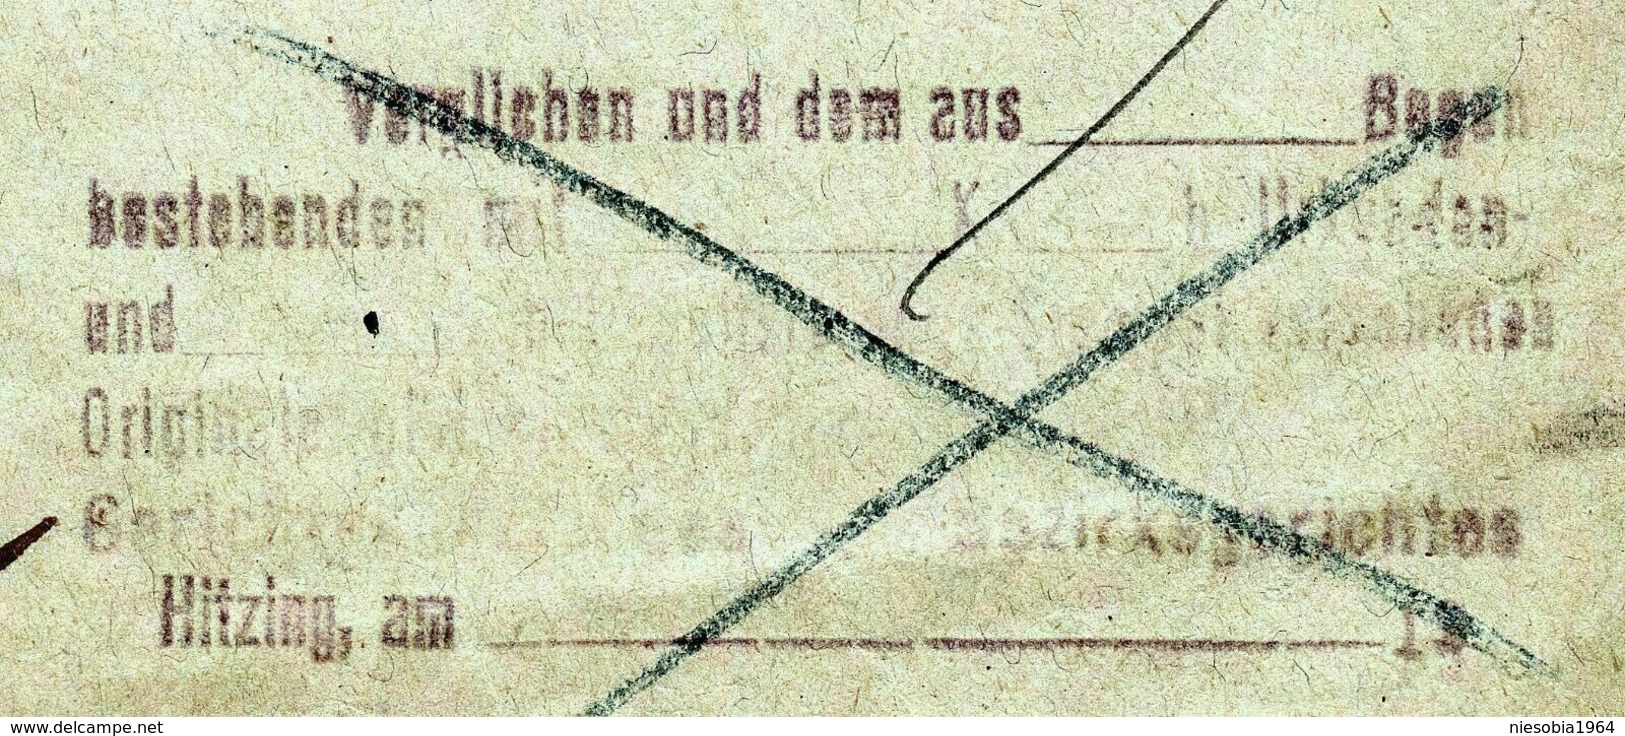 3 x Austrian duty stamp Oesterreichische Gebührenmarke Hietzing Vienna 1925